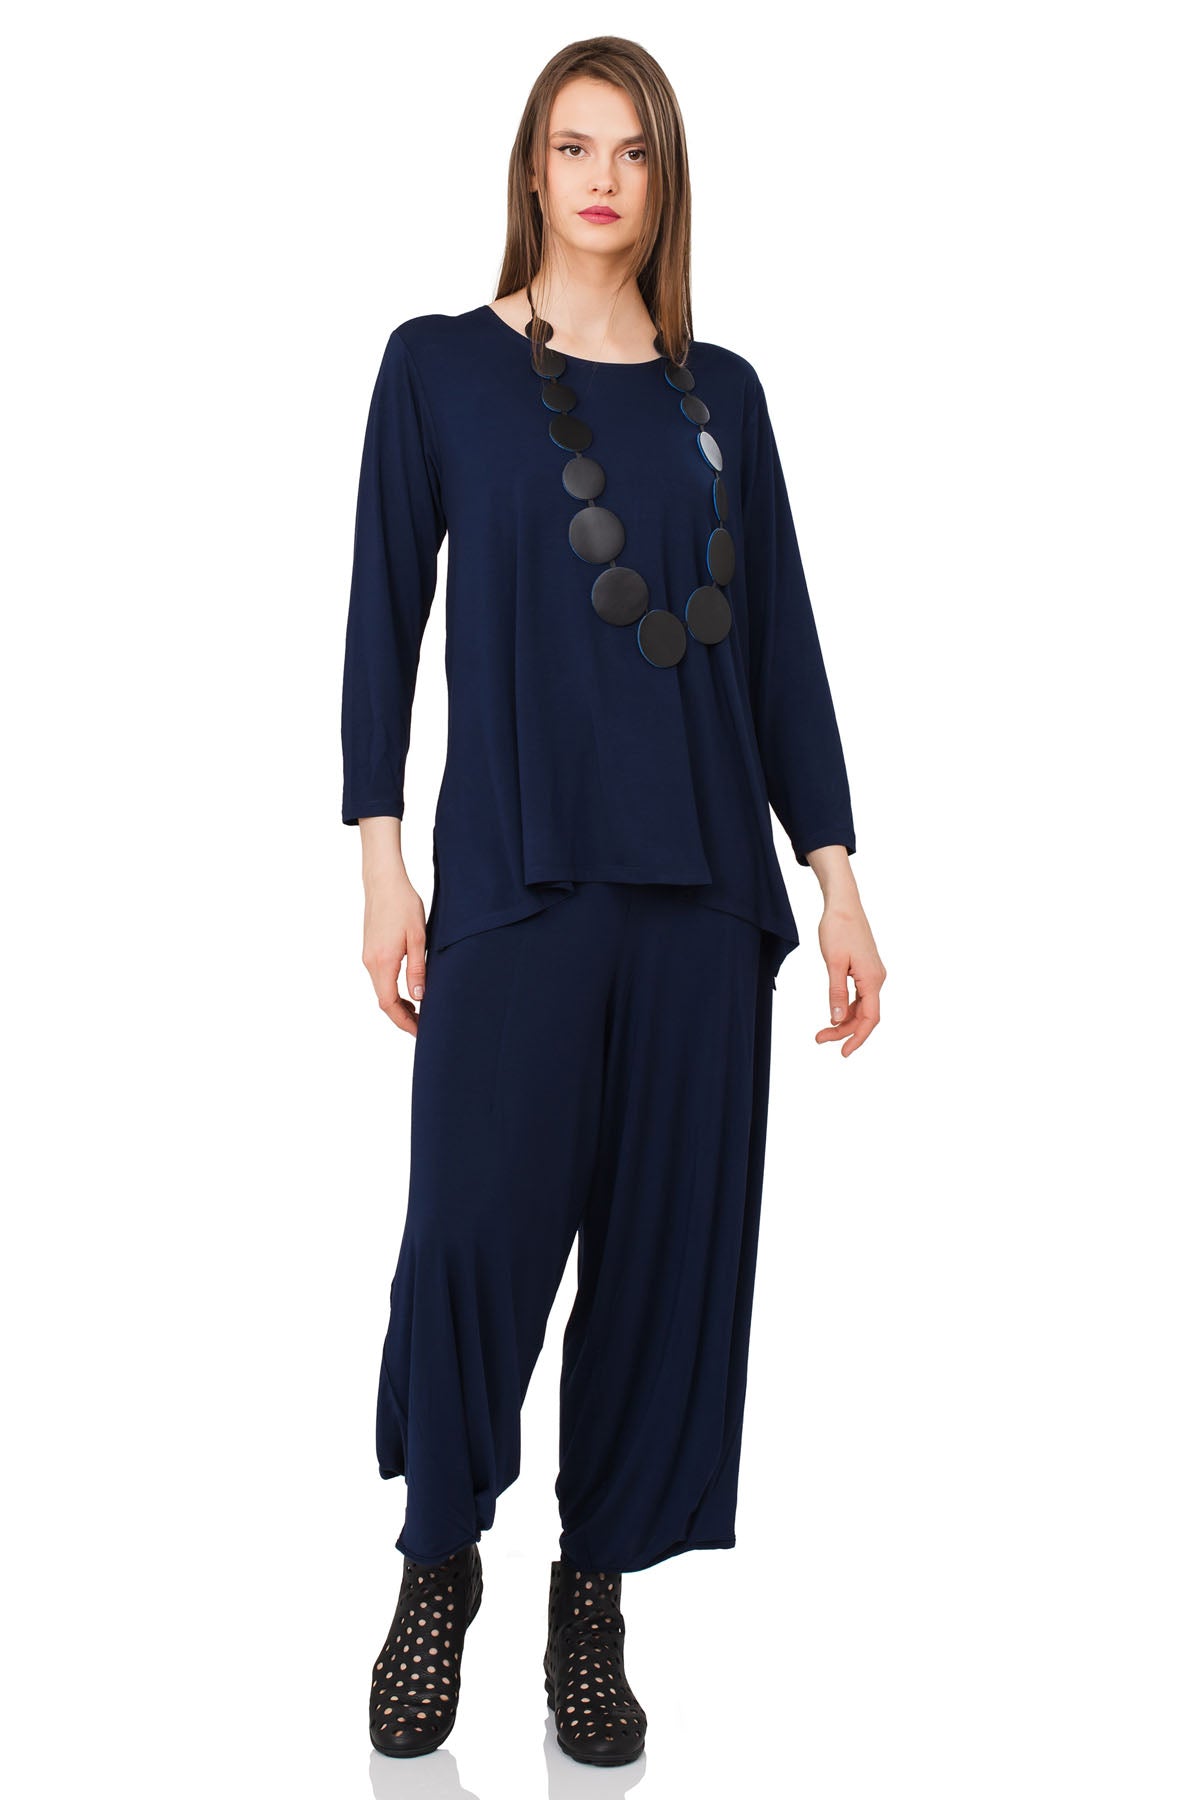 Chic & Simple Συνδυασμός Μπλούζα Άννα & Παντελόνι Αριάδνη - Μπλε Σκούρο